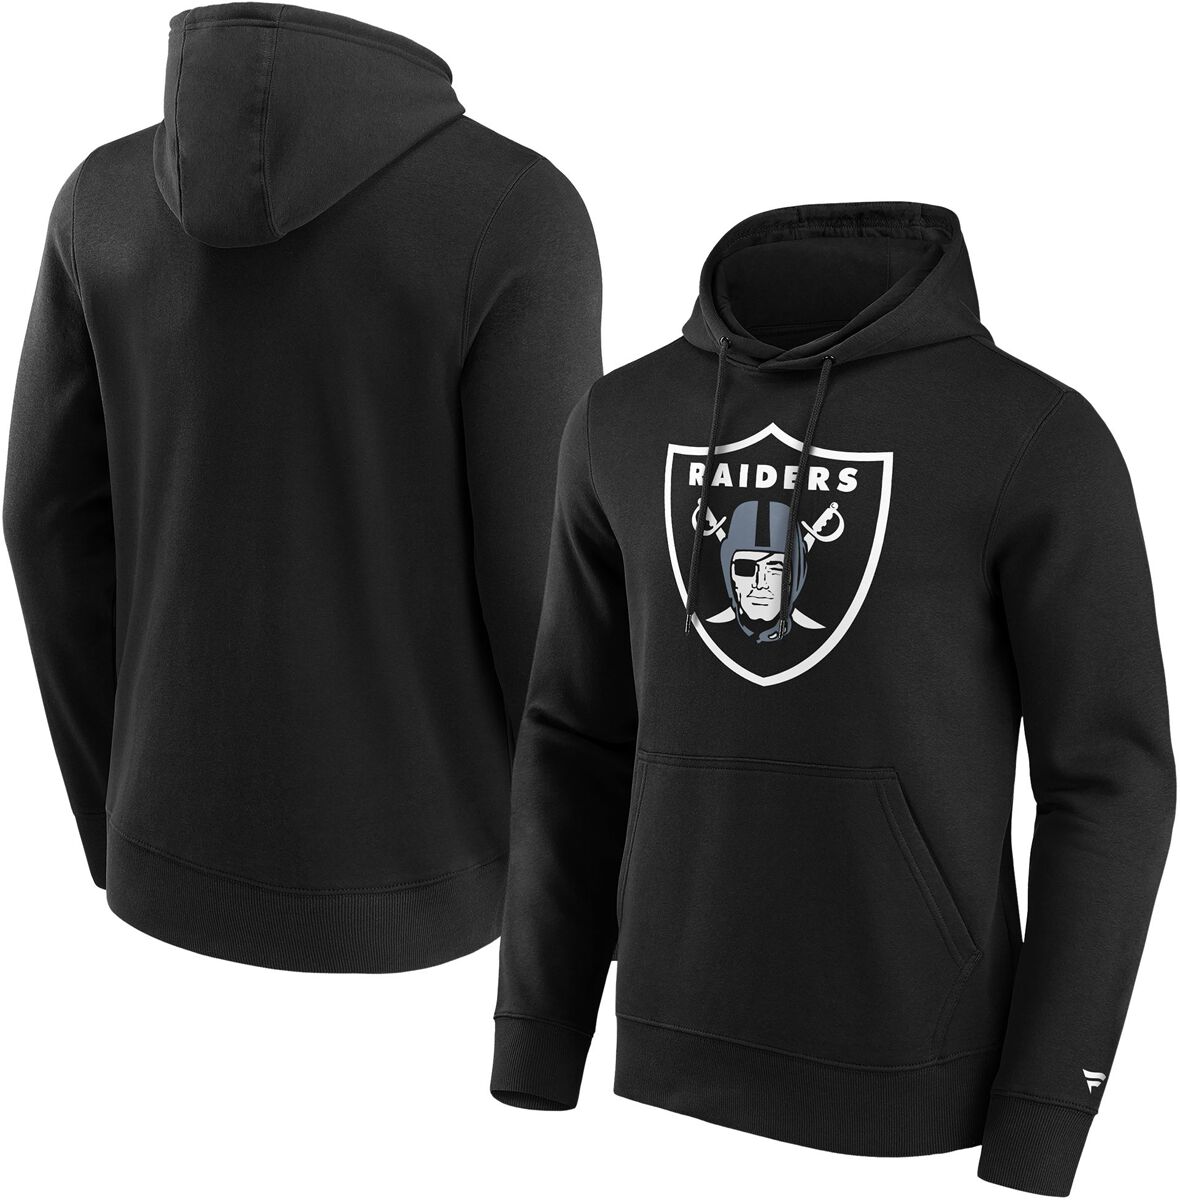 Fanatics Kapuzenpullover - Las Vegas Raiders Logo - S bis L - für Männer - Größe S - schwarz